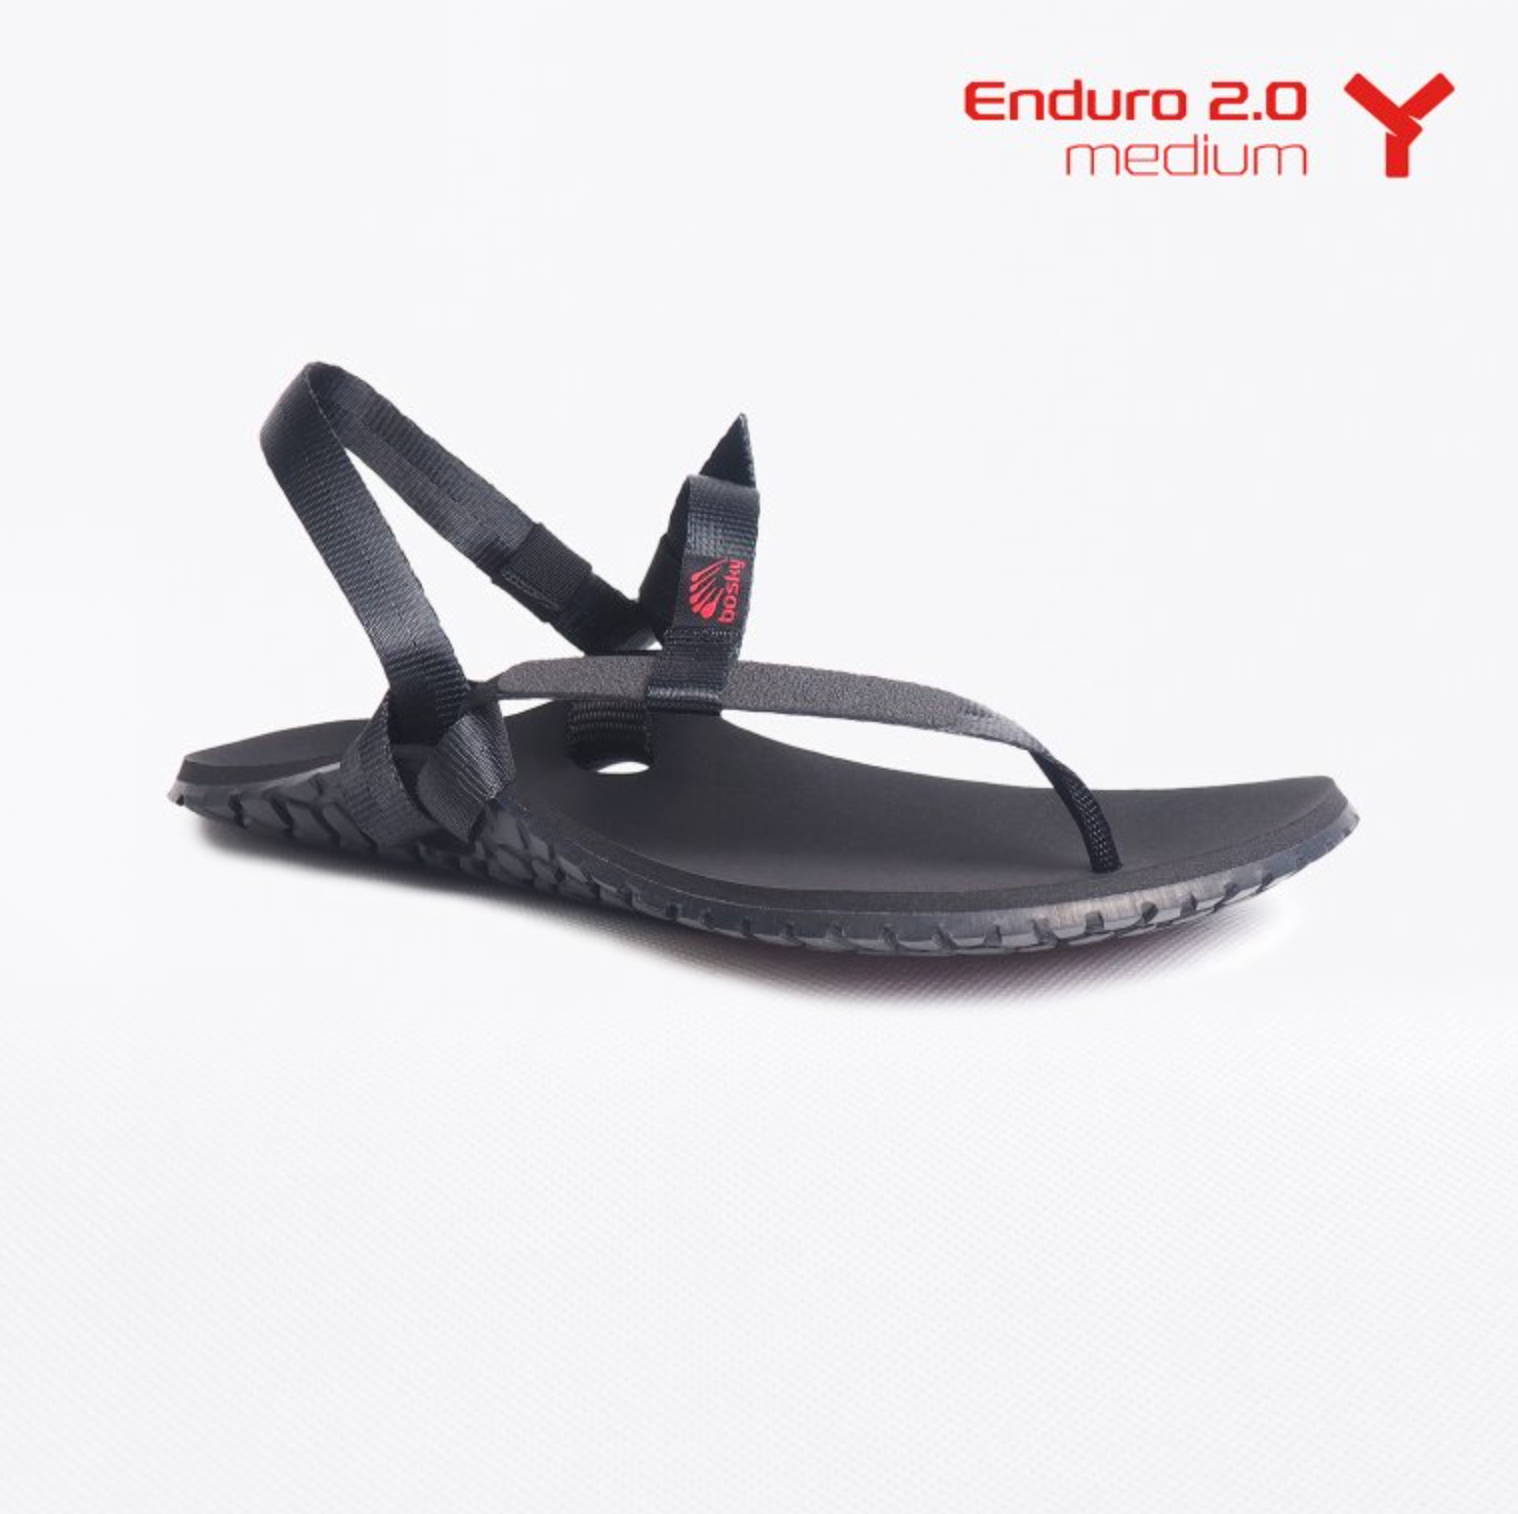 Bosky Enduro 2.0 Y Medium barfods sandaler til kvinder og mænd i farven black, yderside